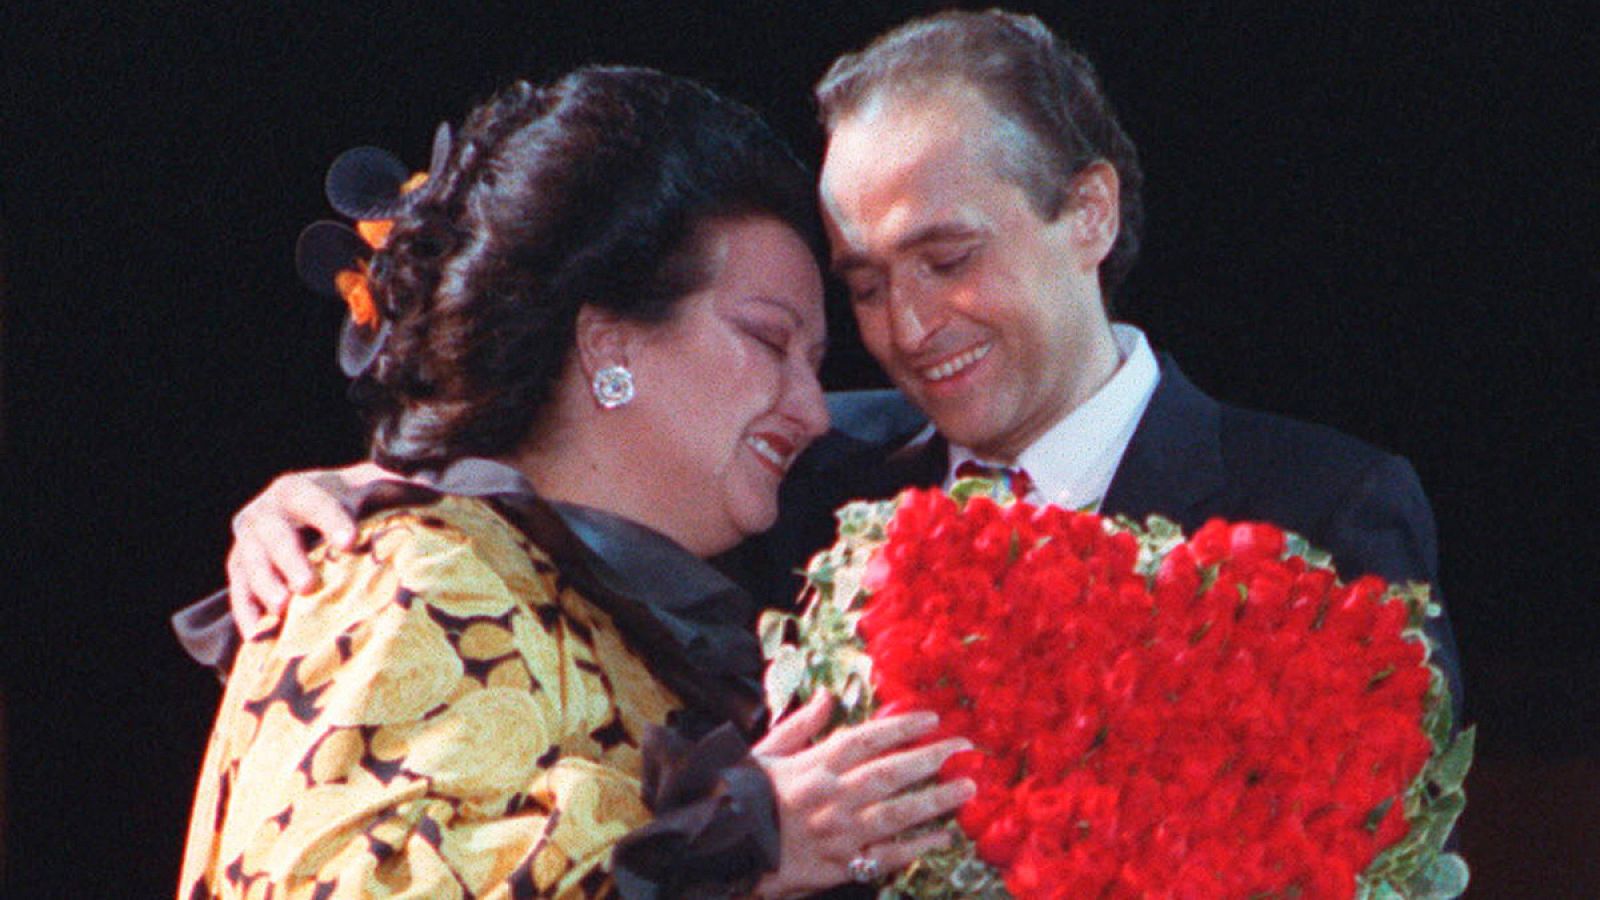 Josep Carreras recibe emocionado un centro de flores en forma de corazón de manos de la cantante Montserrat Caballé el 21 de julio de 1988